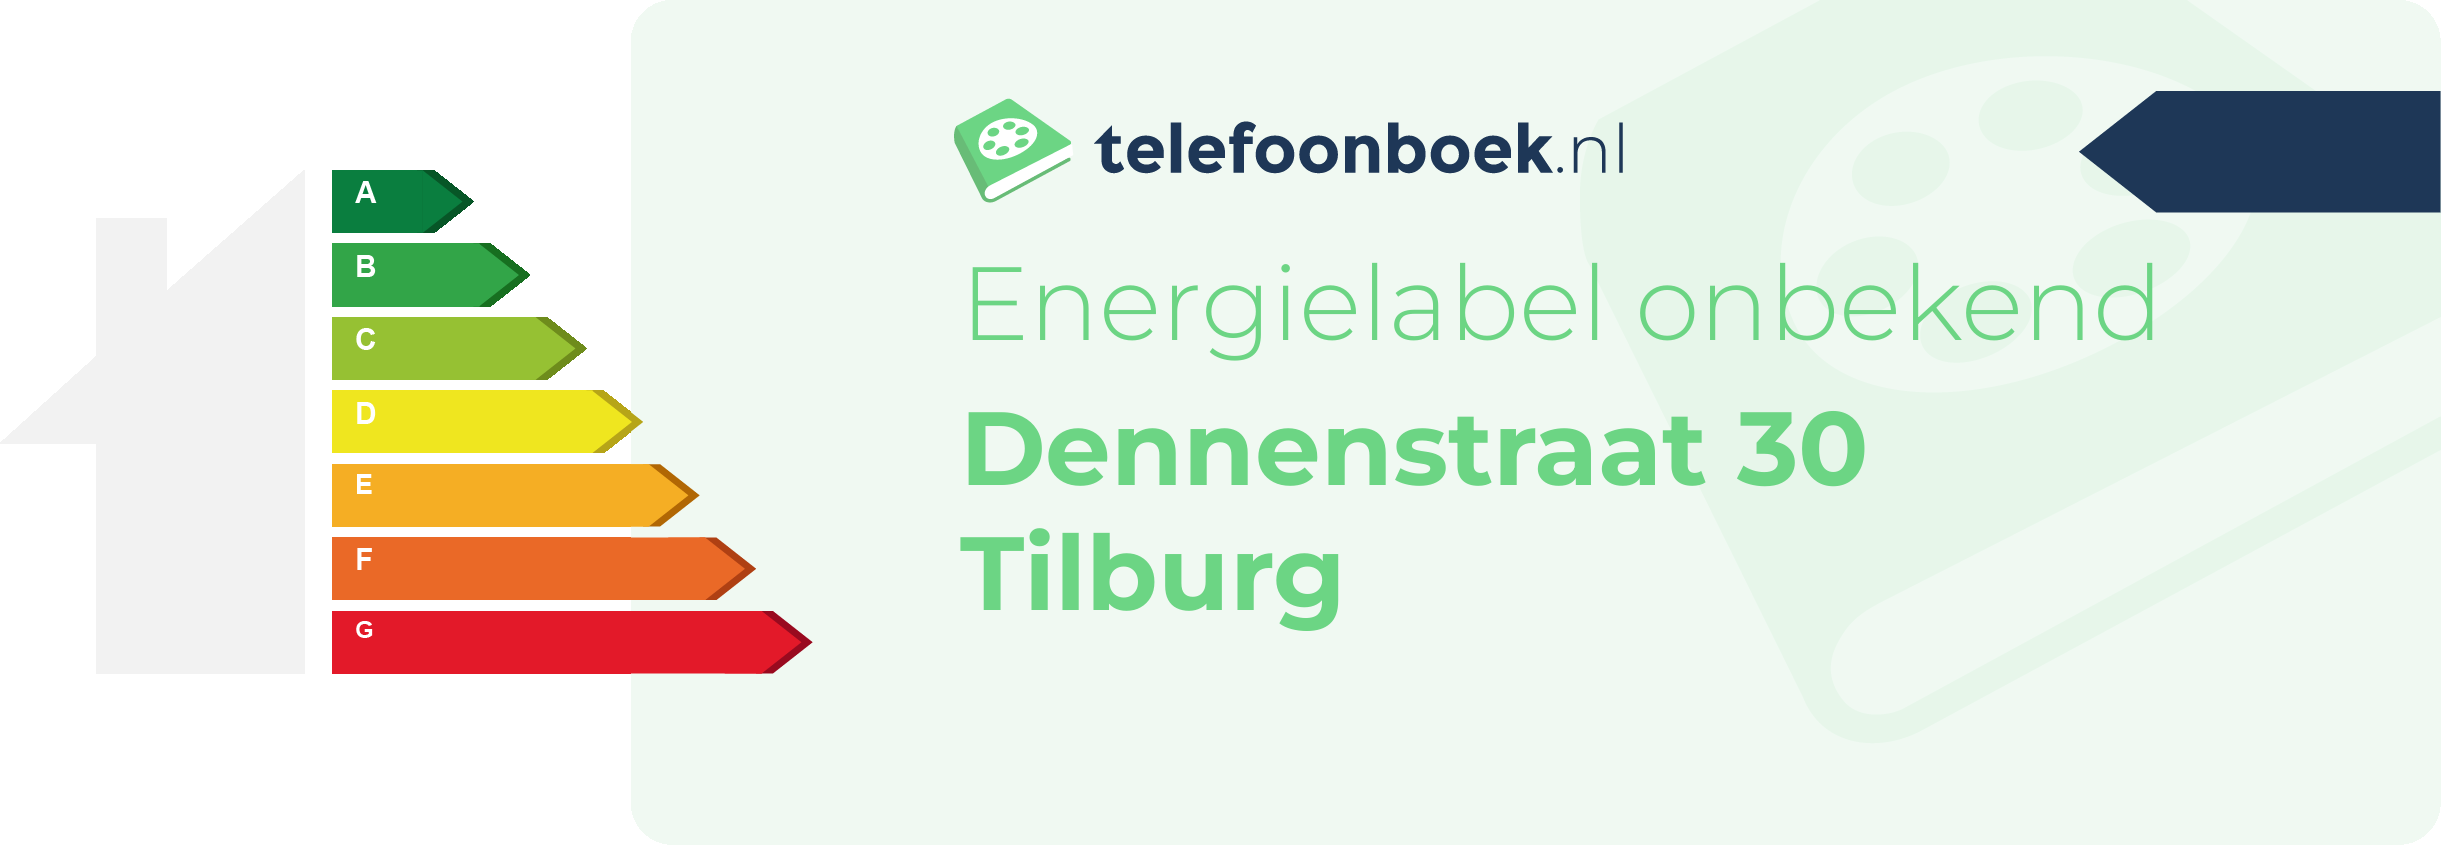 Energielabel Dennenstraat 30 Tilburg